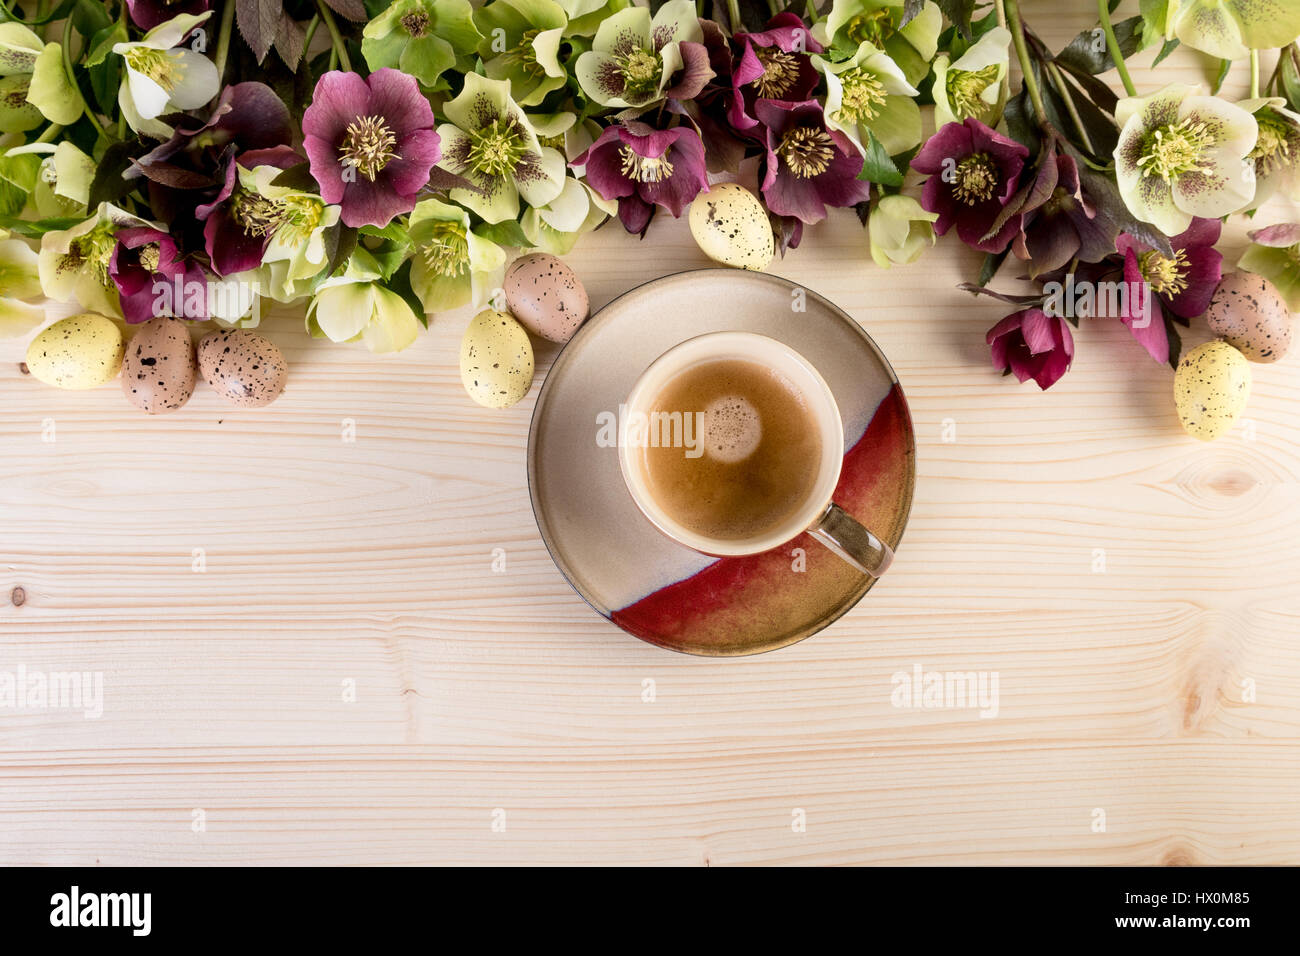 Tasse de café haut Vue sur fond en bois avec fleurs de printemps et les oeufs de Pâques. Style rétro, des couleurs pastel. Banque D'Images